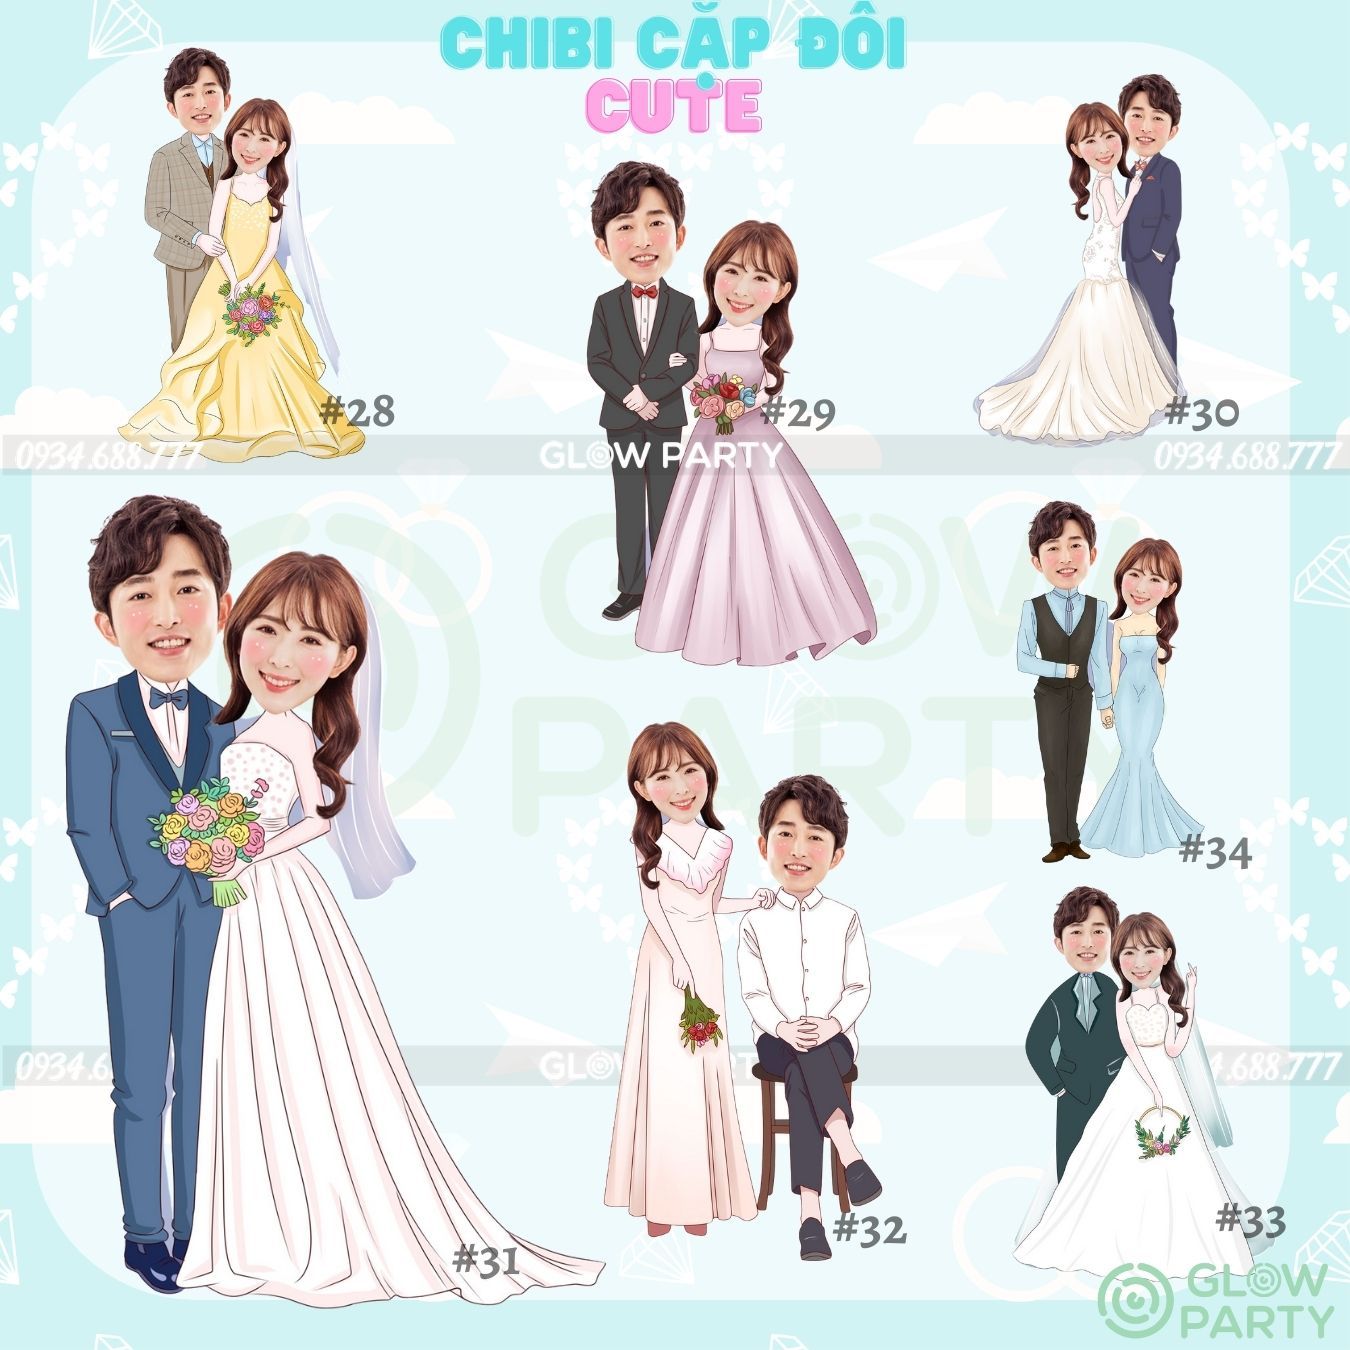 Chibi cưới - set 2 (chọn mẫu)